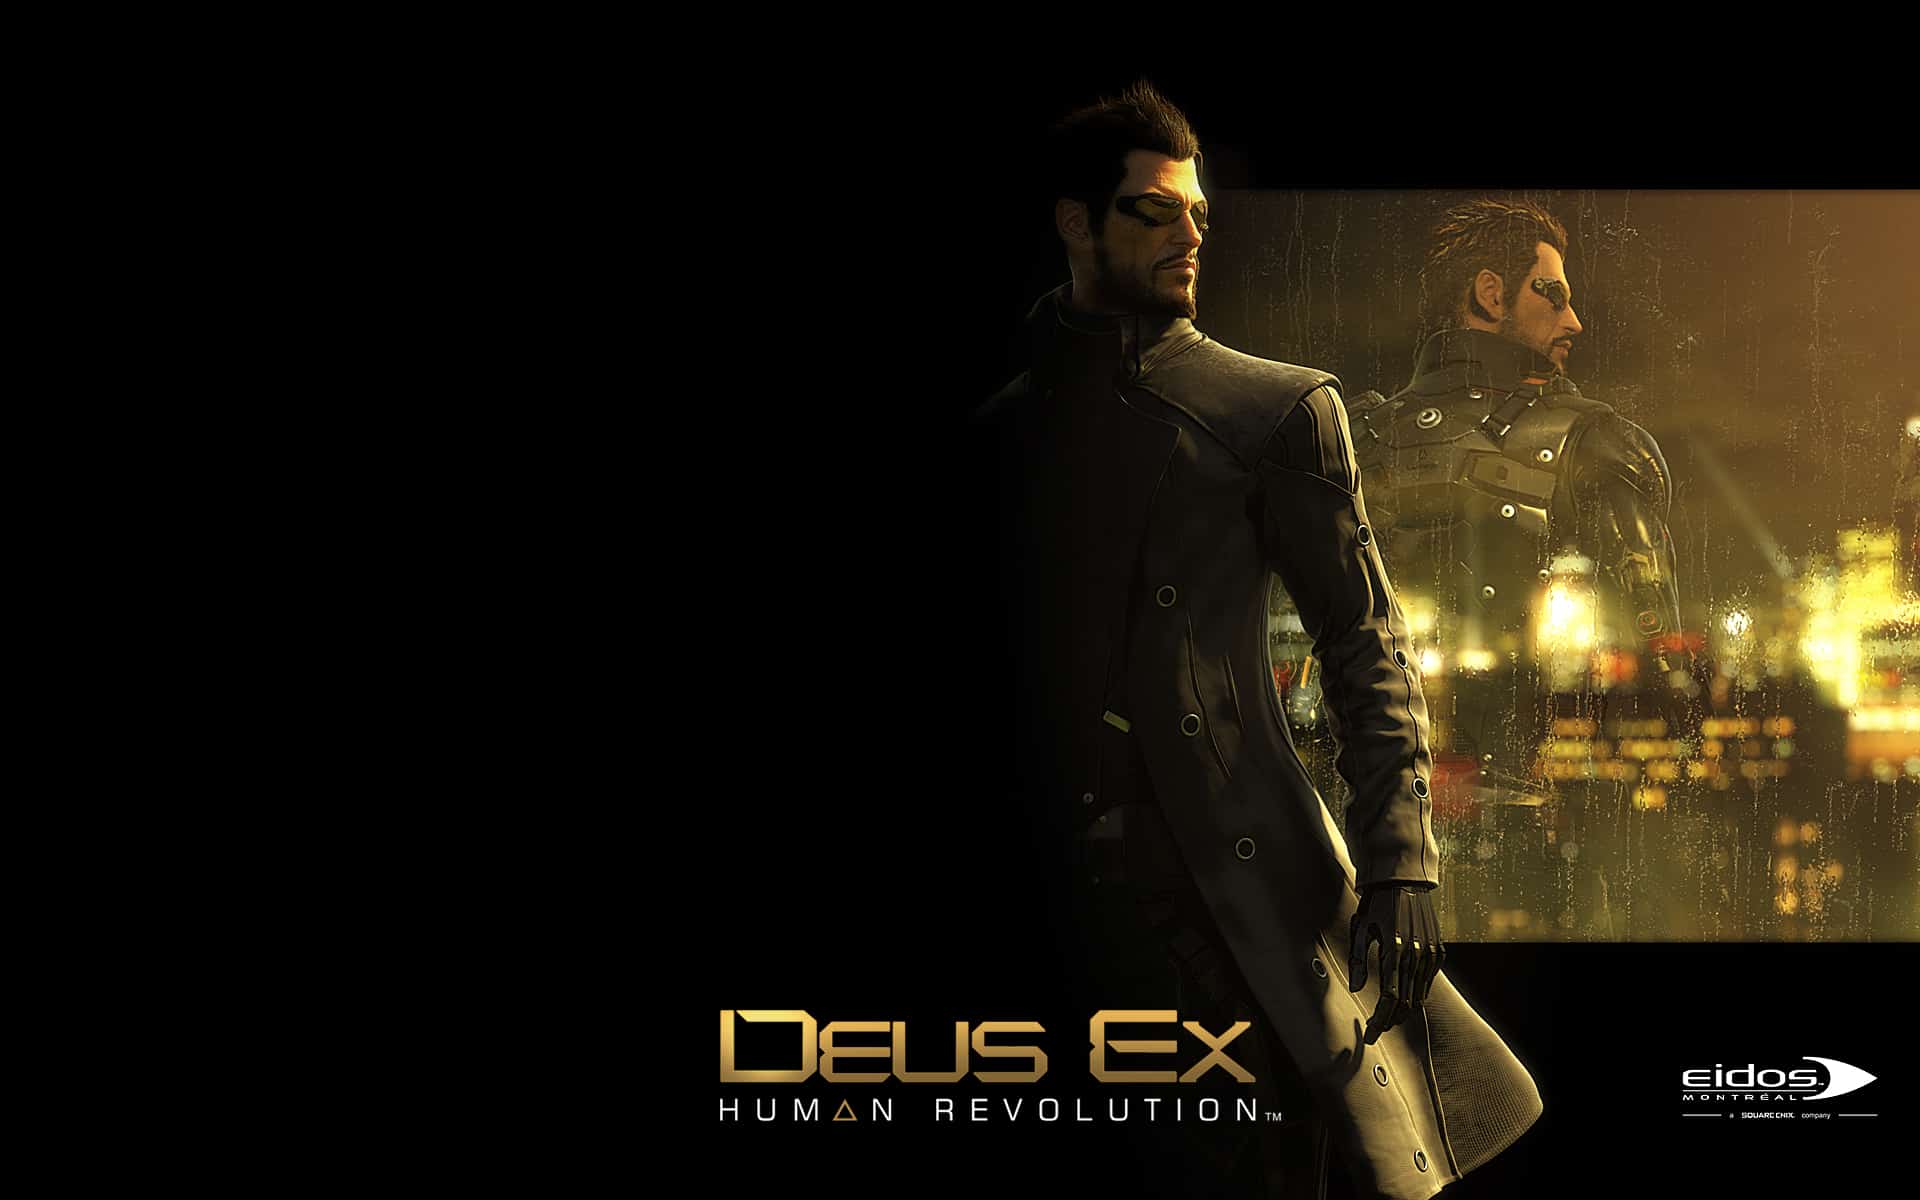 Deus Ex Human Revolution Wallpaper (HD) - 1920 x 1200 jpeg 830kB